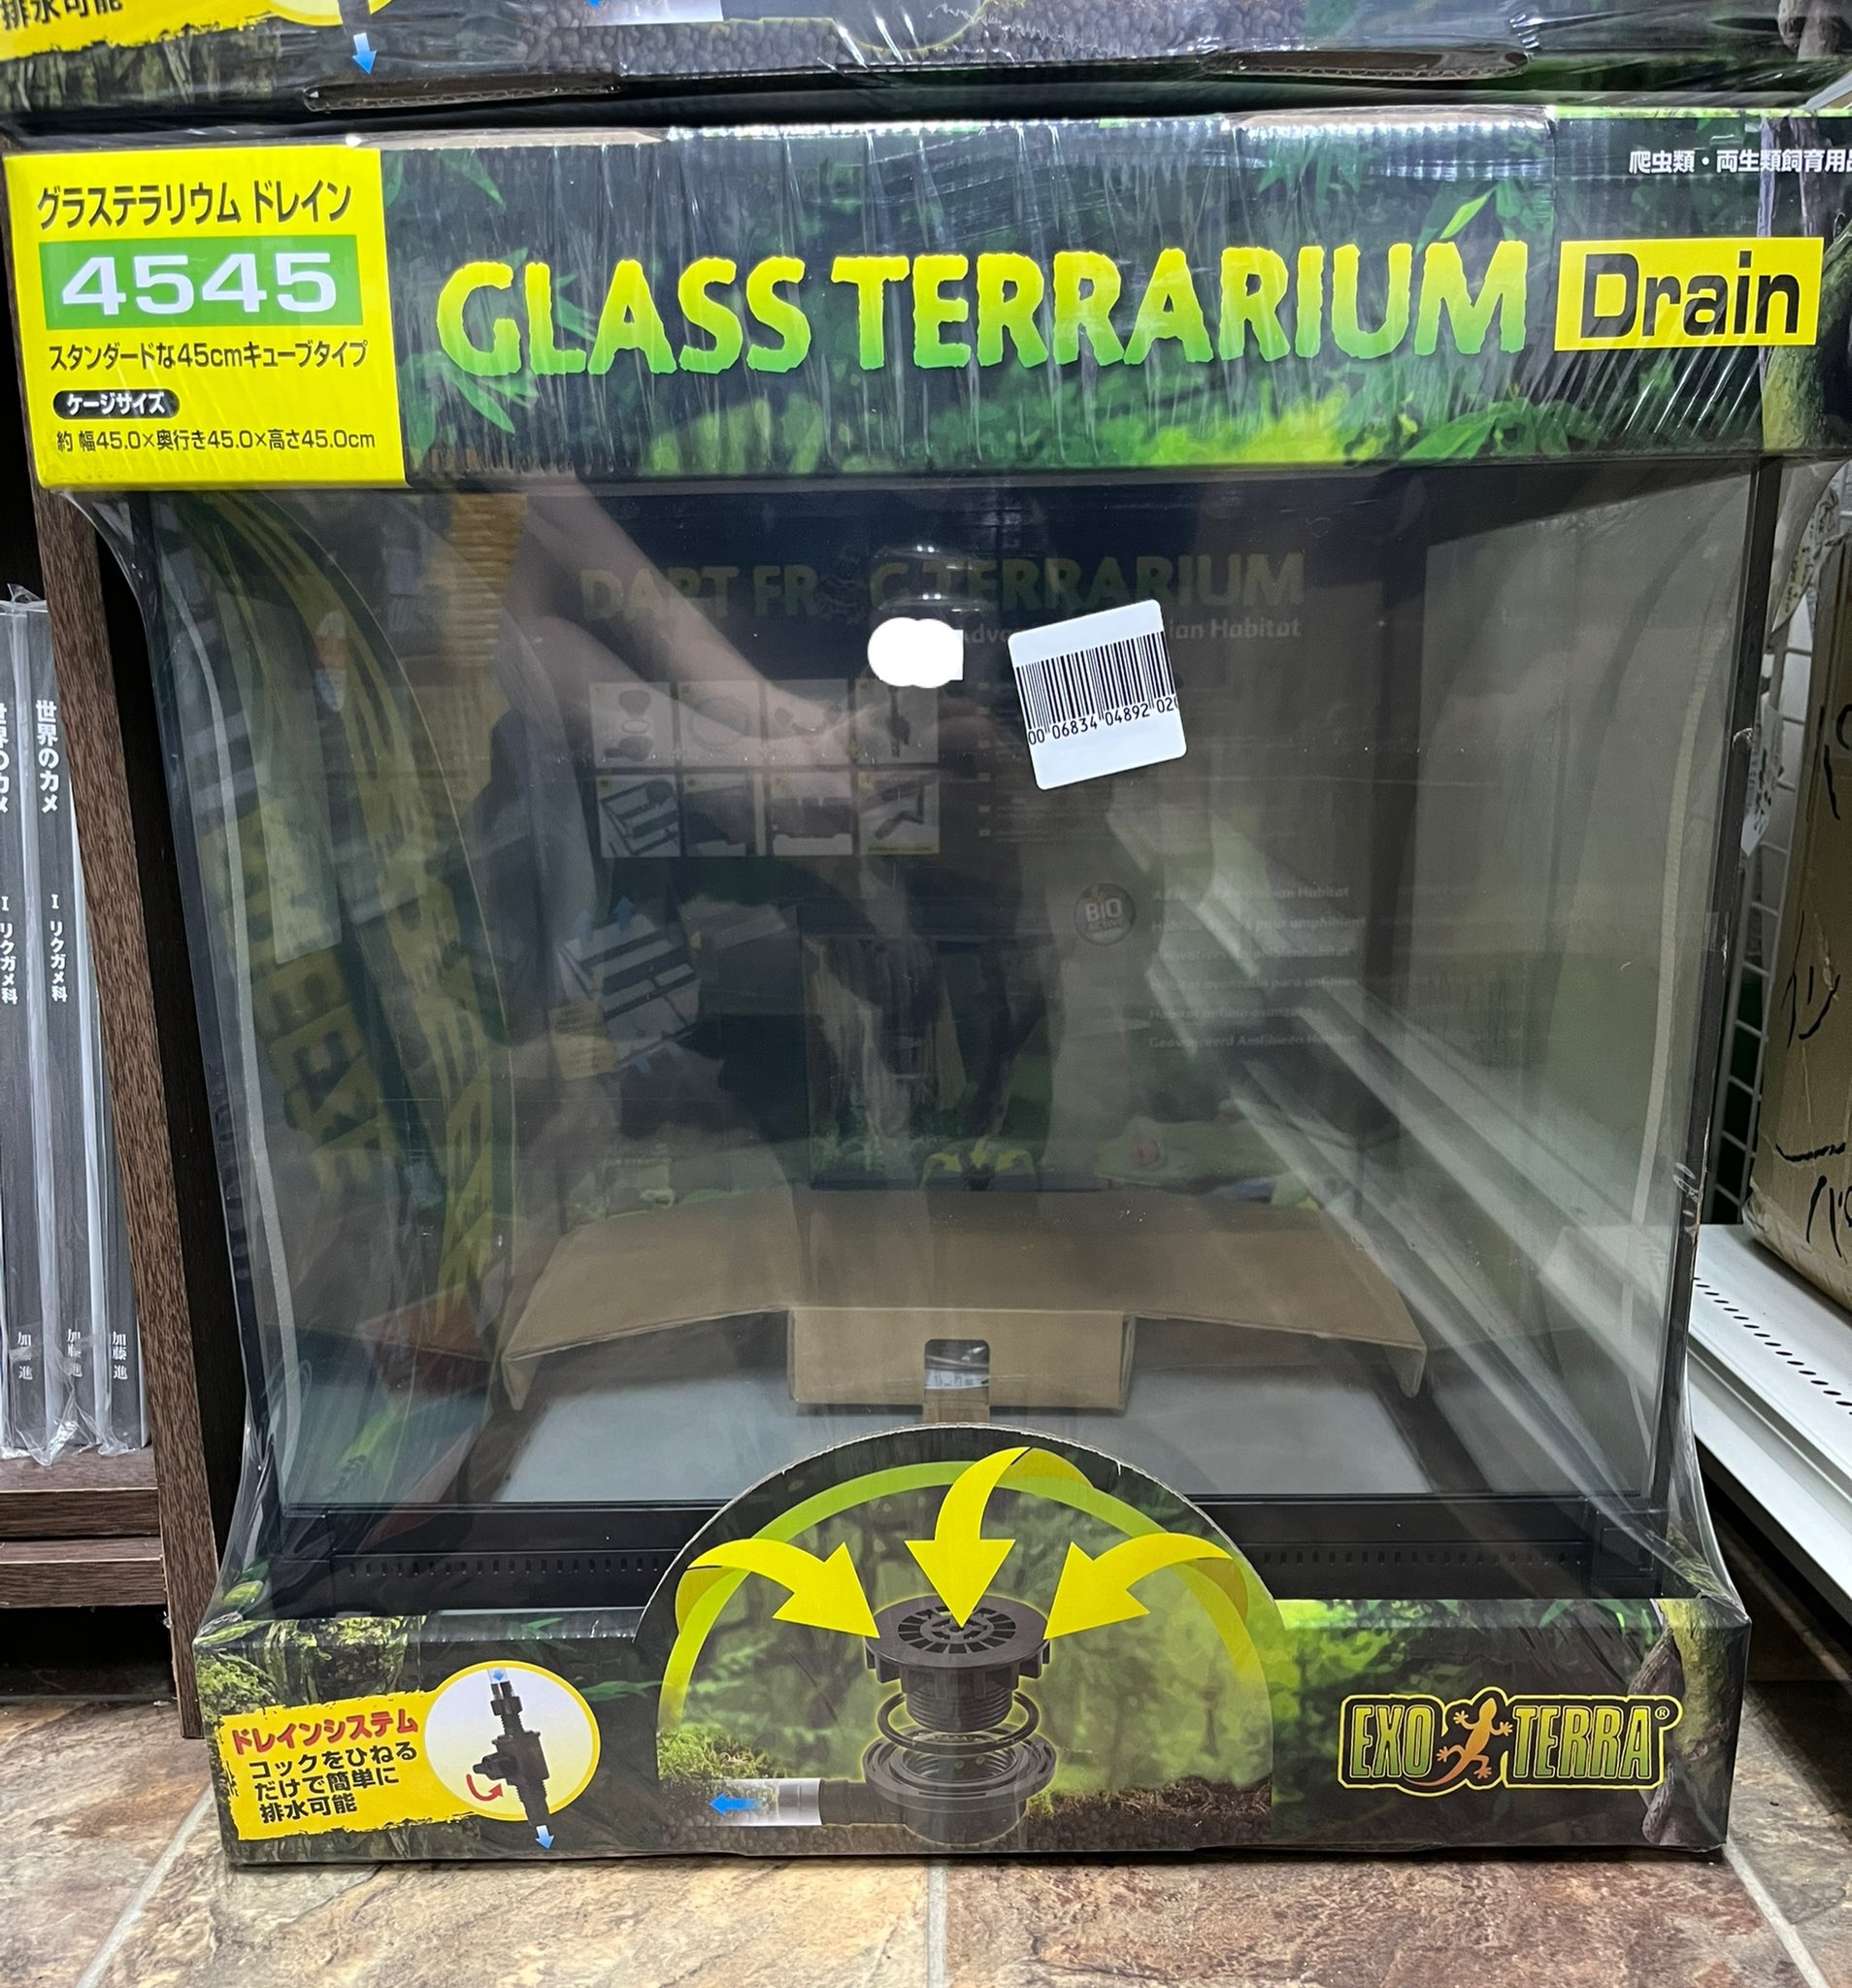 速くおよび自由な GEX グラステラリウム9060 手渡し限定 埼玉県 爬虫類